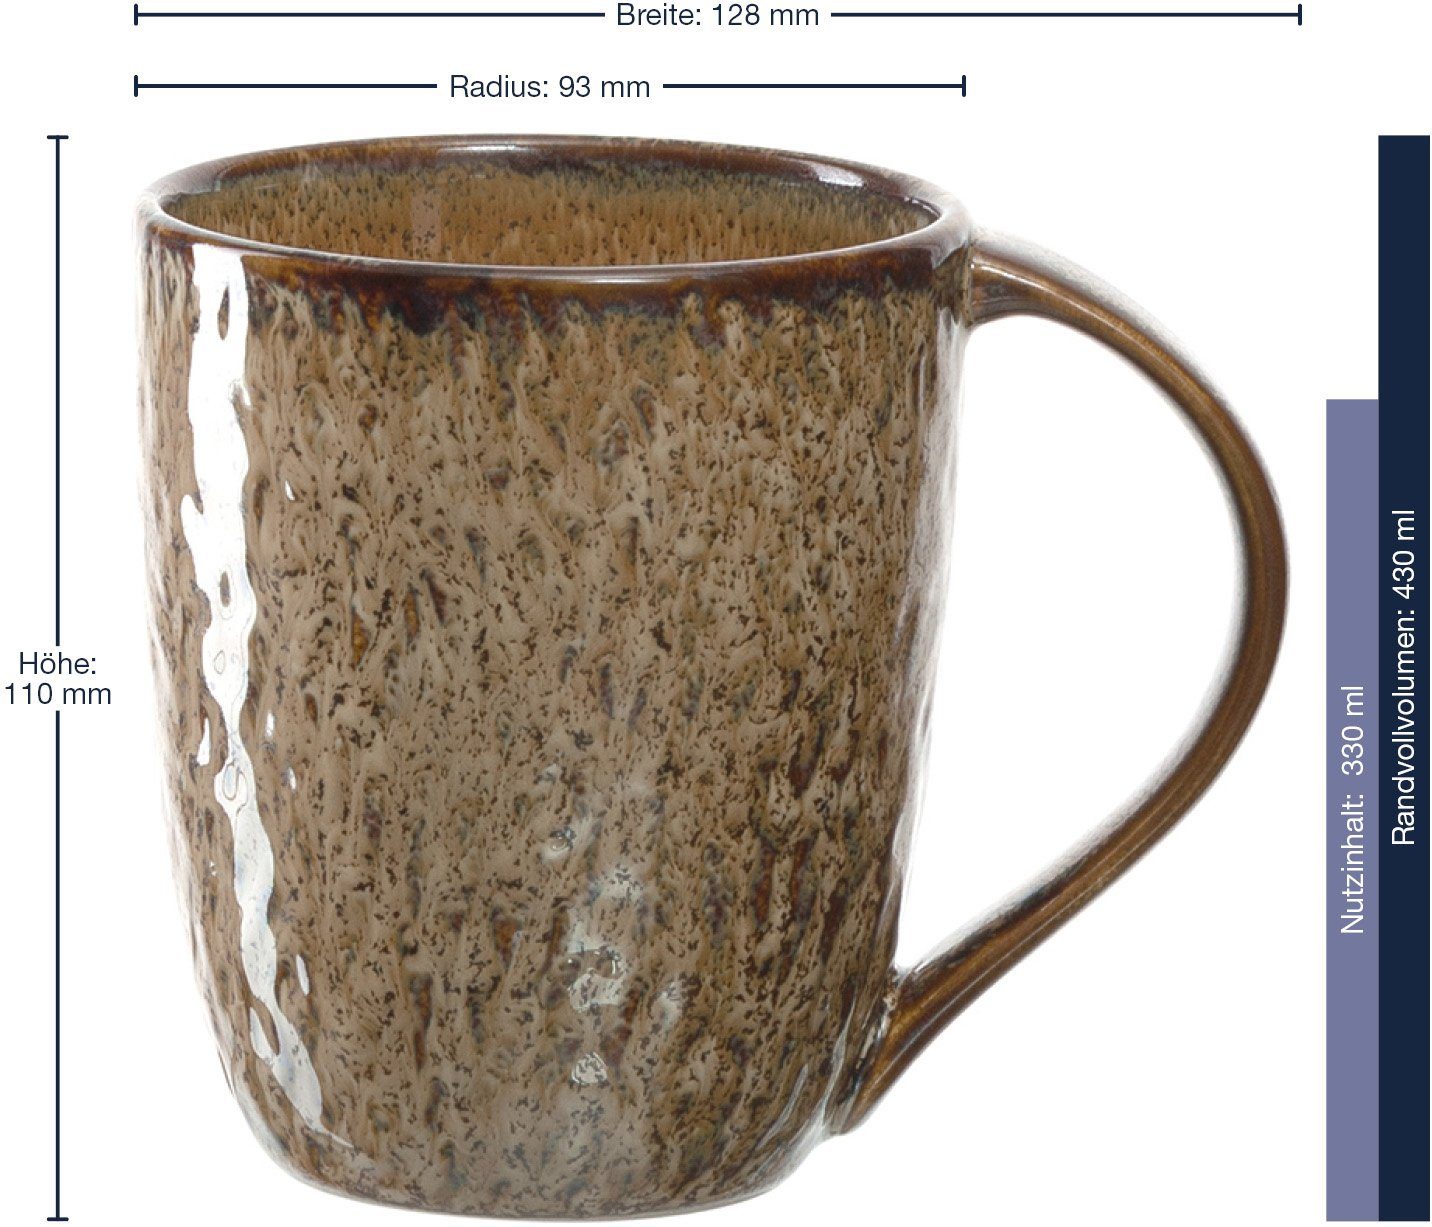 sand Keramik, Matera, ml, LEONARDO 430 6-teilig Becher